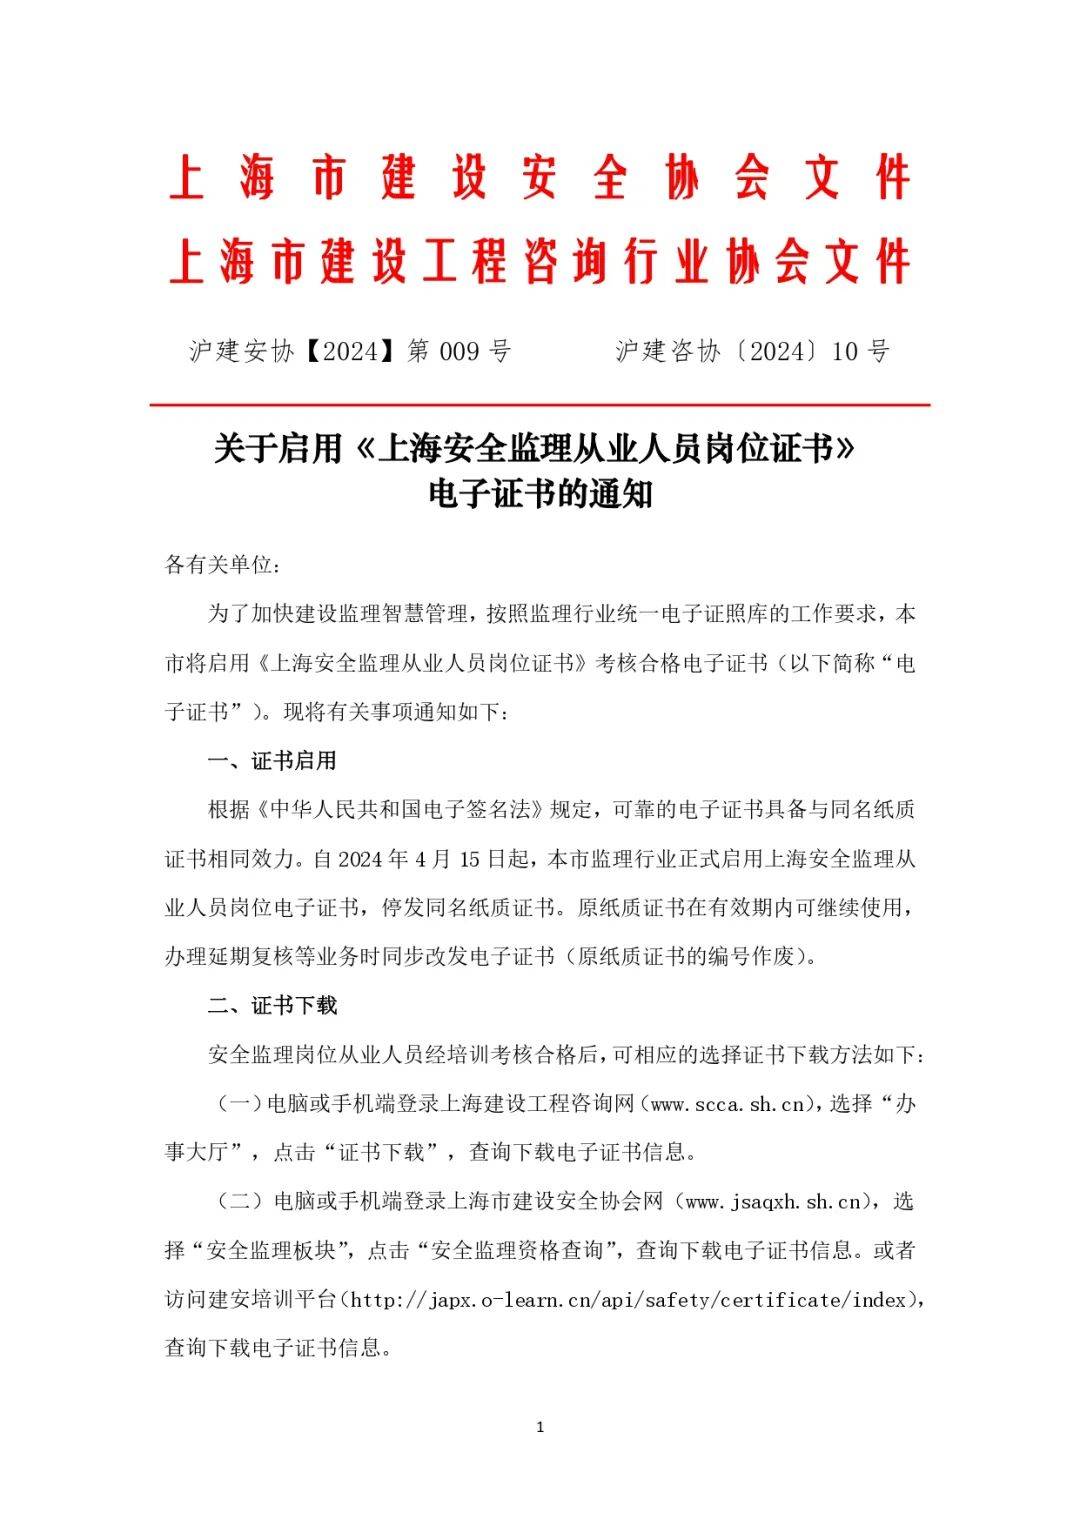 上海市正式启用《上海安全监理从业人员岗位证书》电子证书